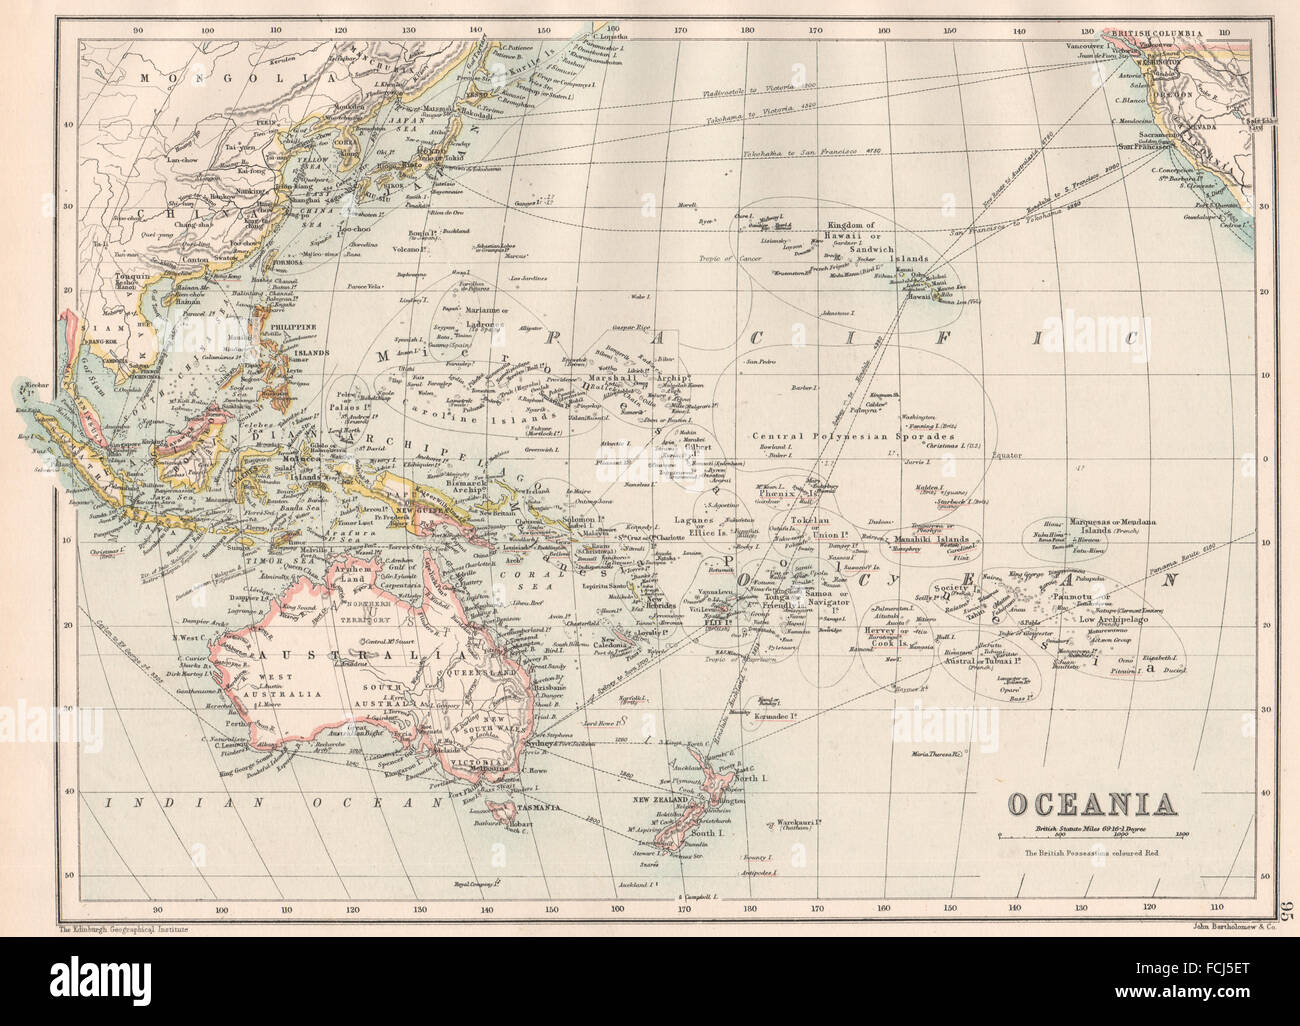 Océanie : Australie Mélanésie Micronésie Polynésie Française Océan Pacifique, 1891 map Banque D'Images